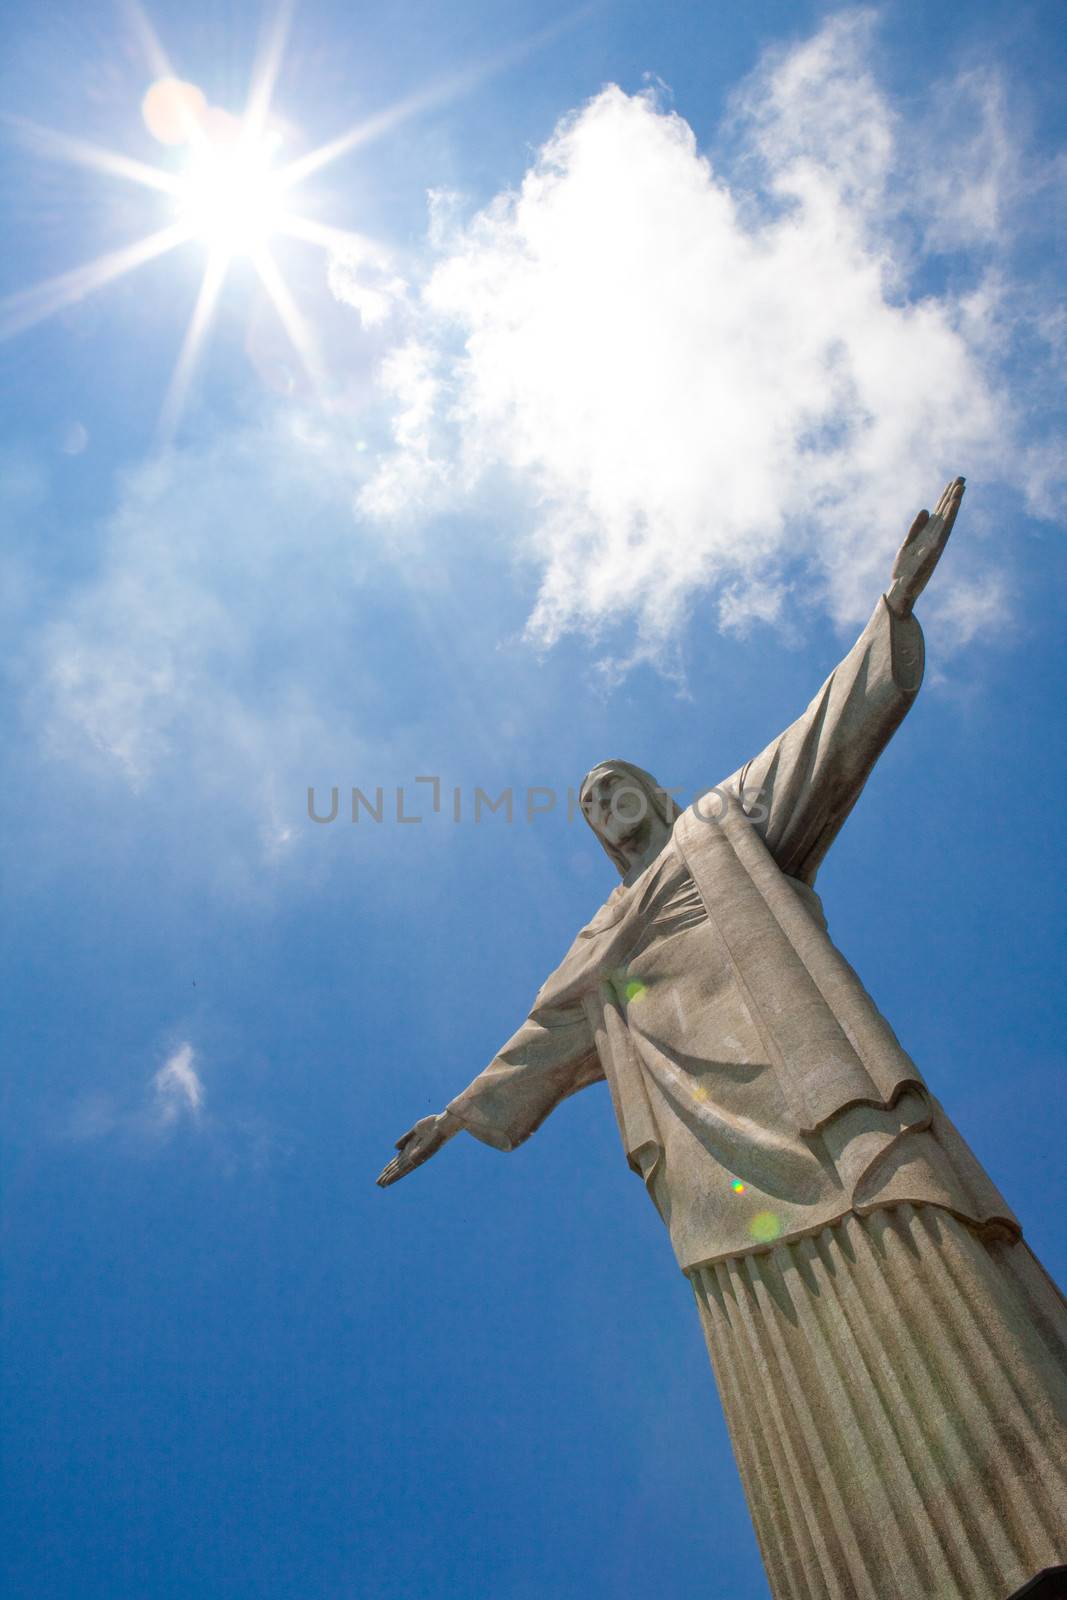 Christ statue in Rio